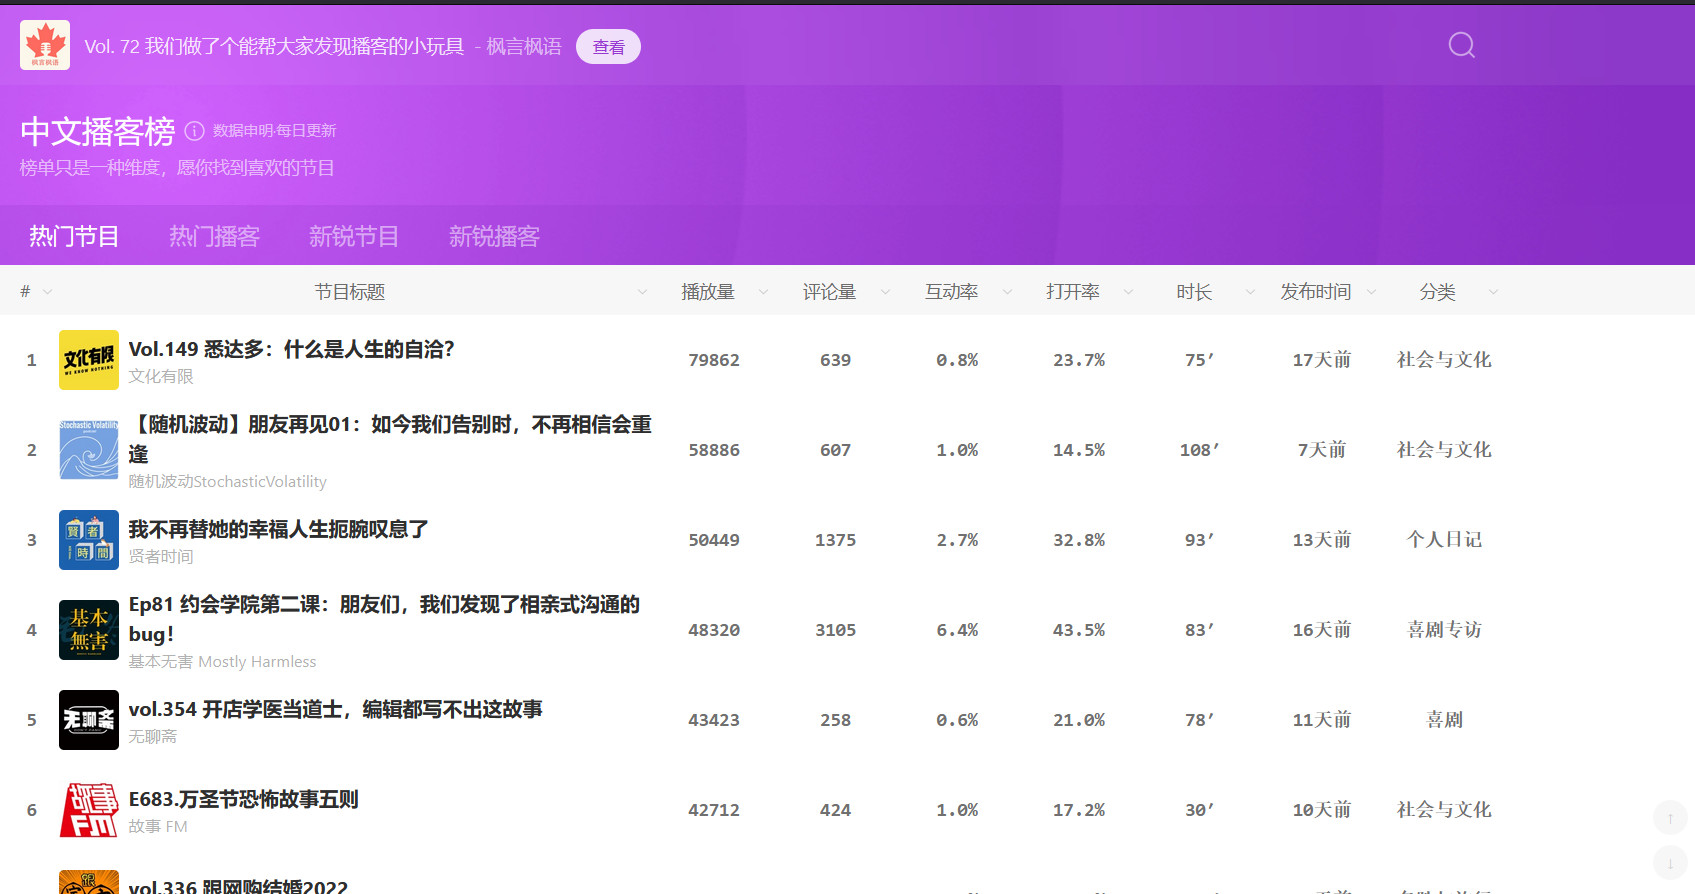 中文播客榜 xyzrank.com，发现更多有趣的播客节目